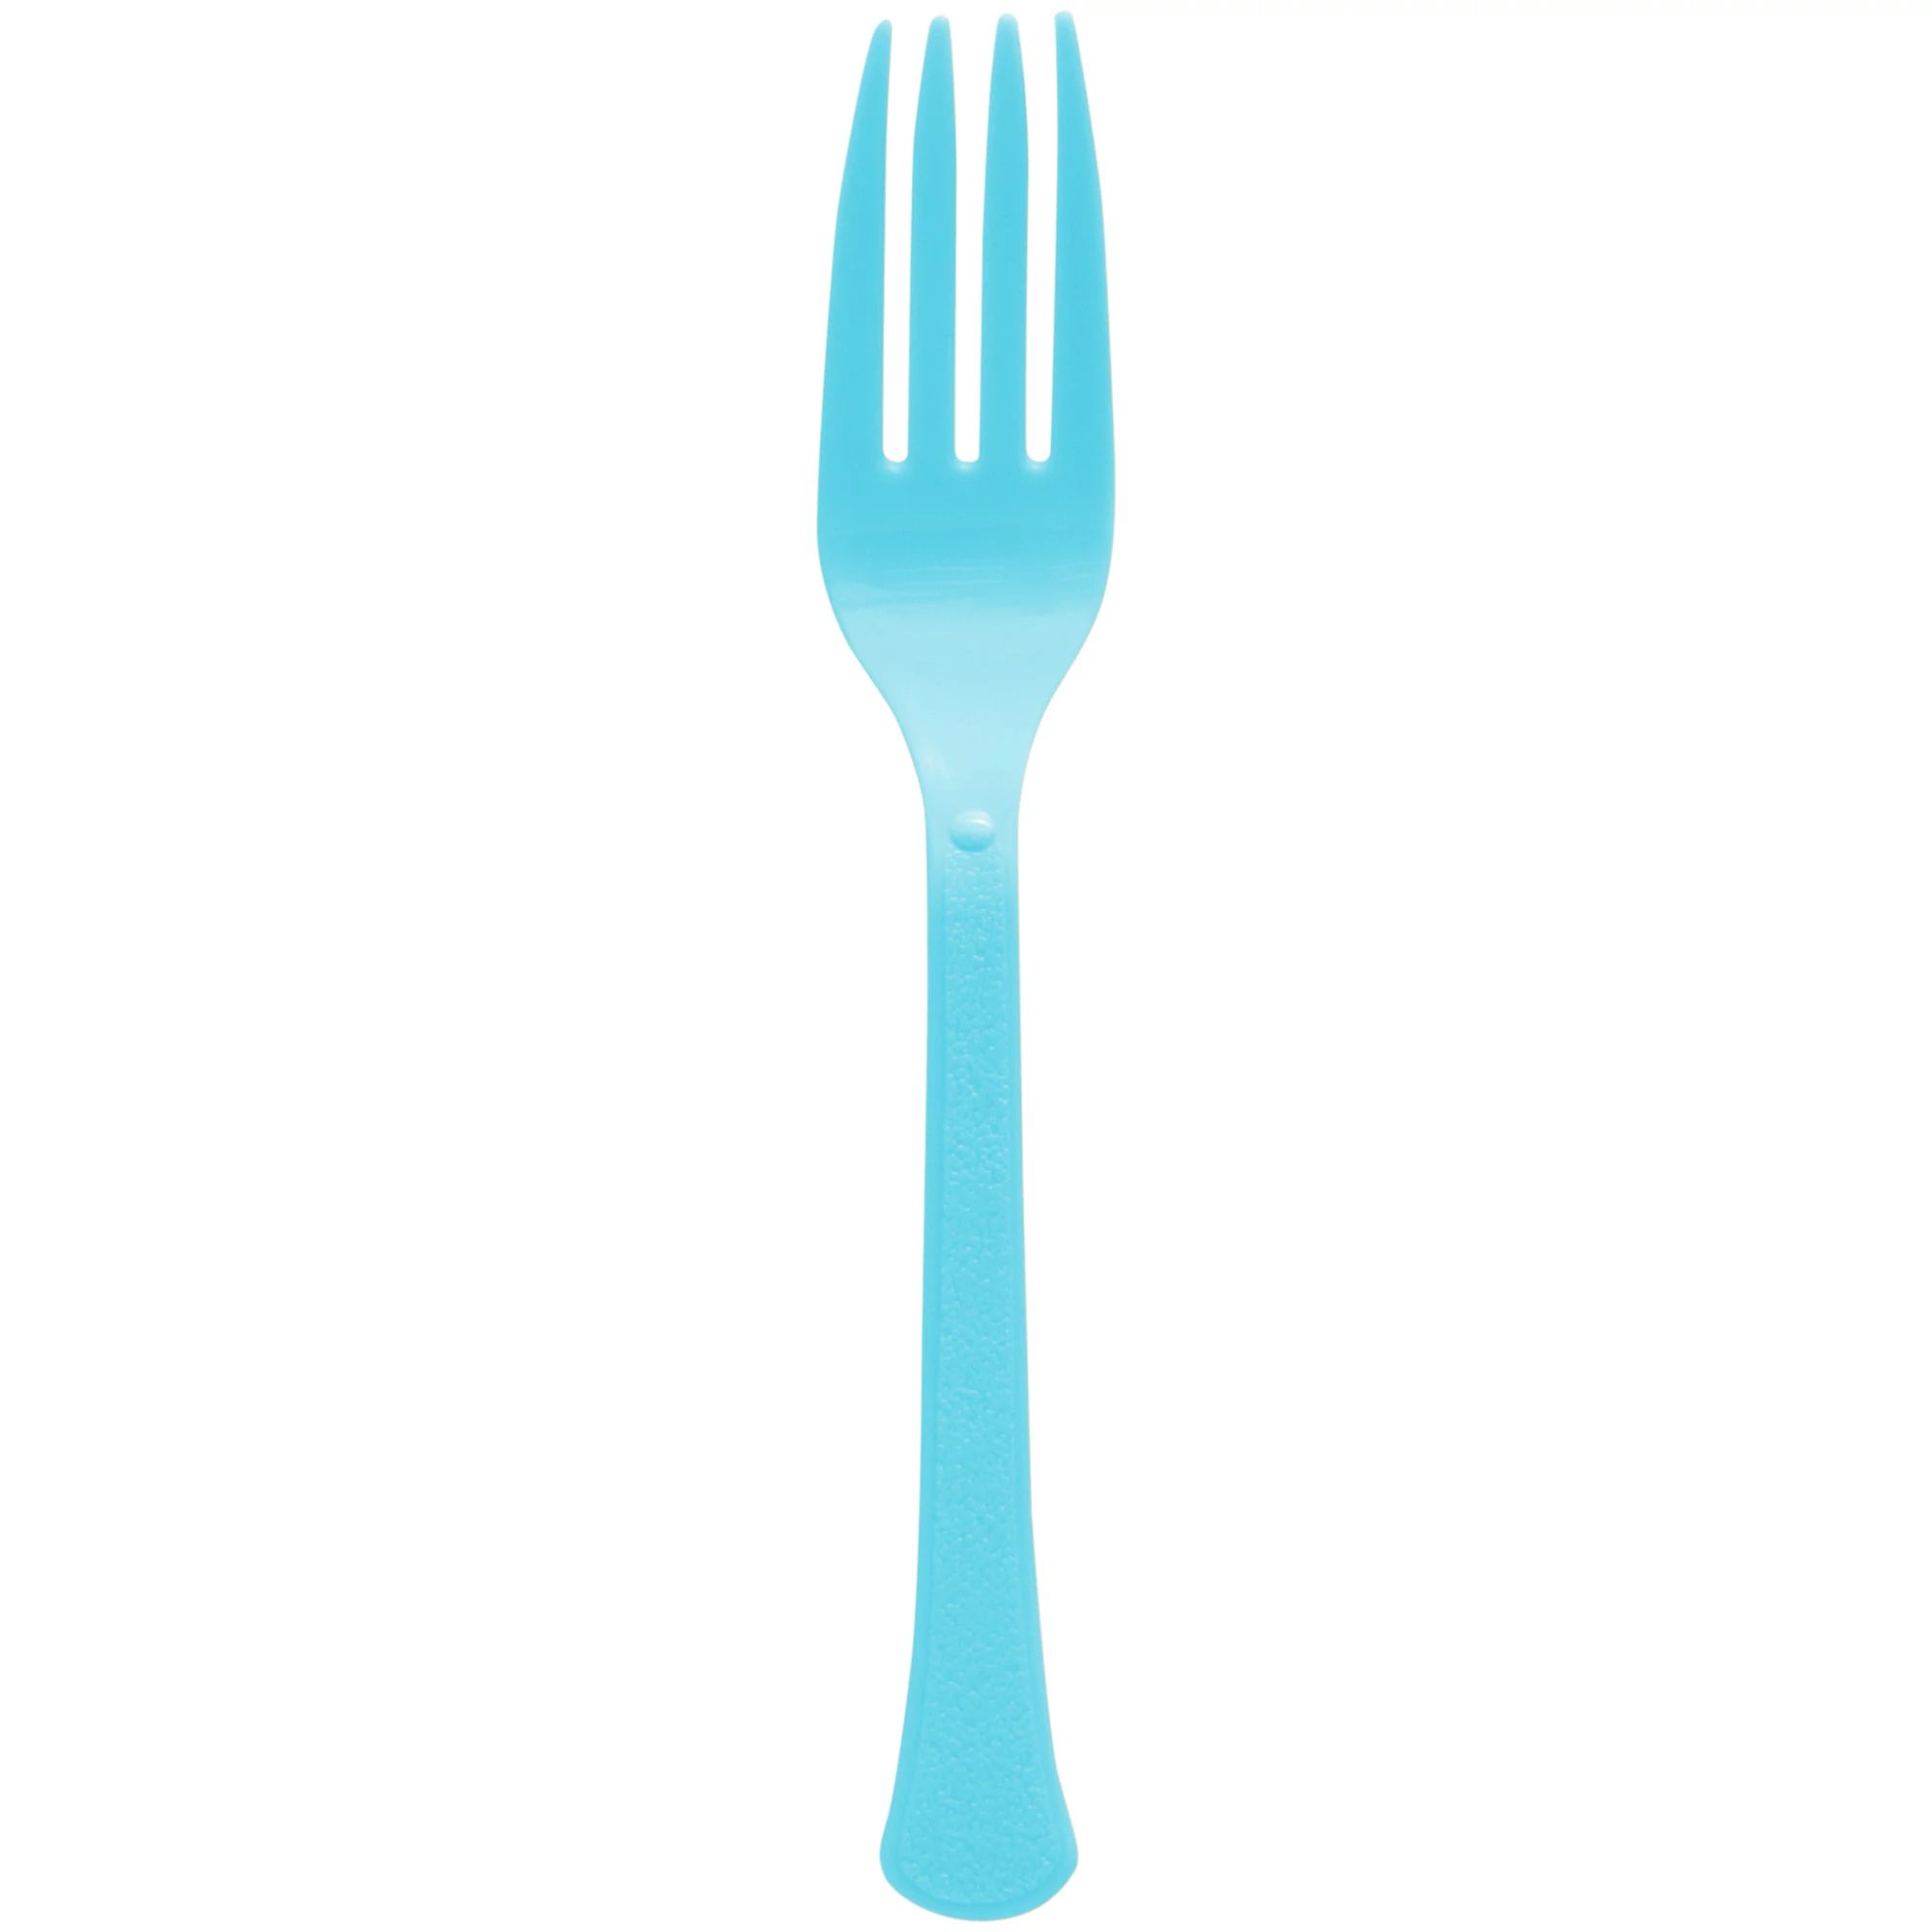 Pastel blue forks